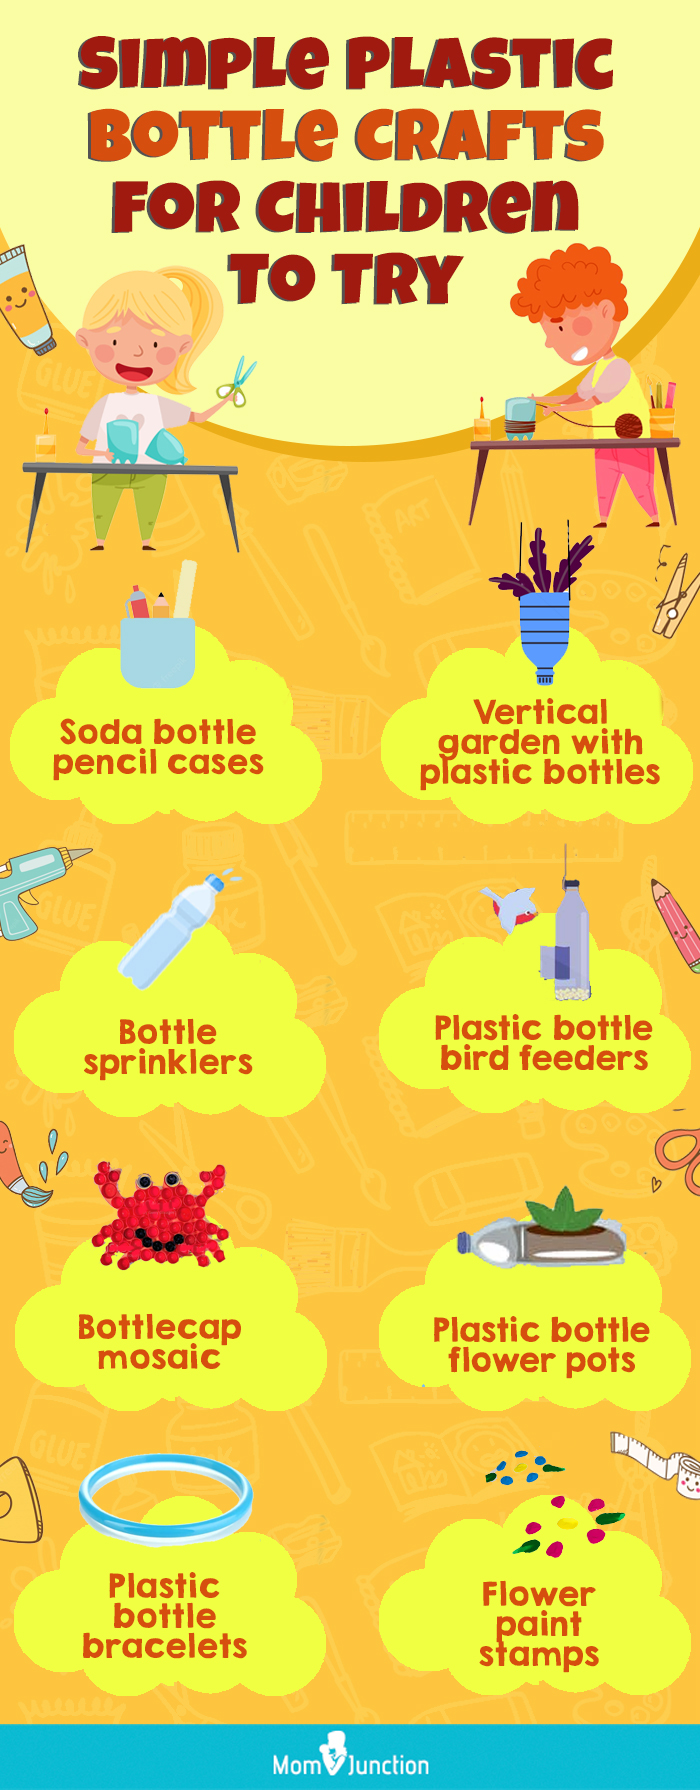 简单的塑料瓶工艺品儿童尝试(infographic)